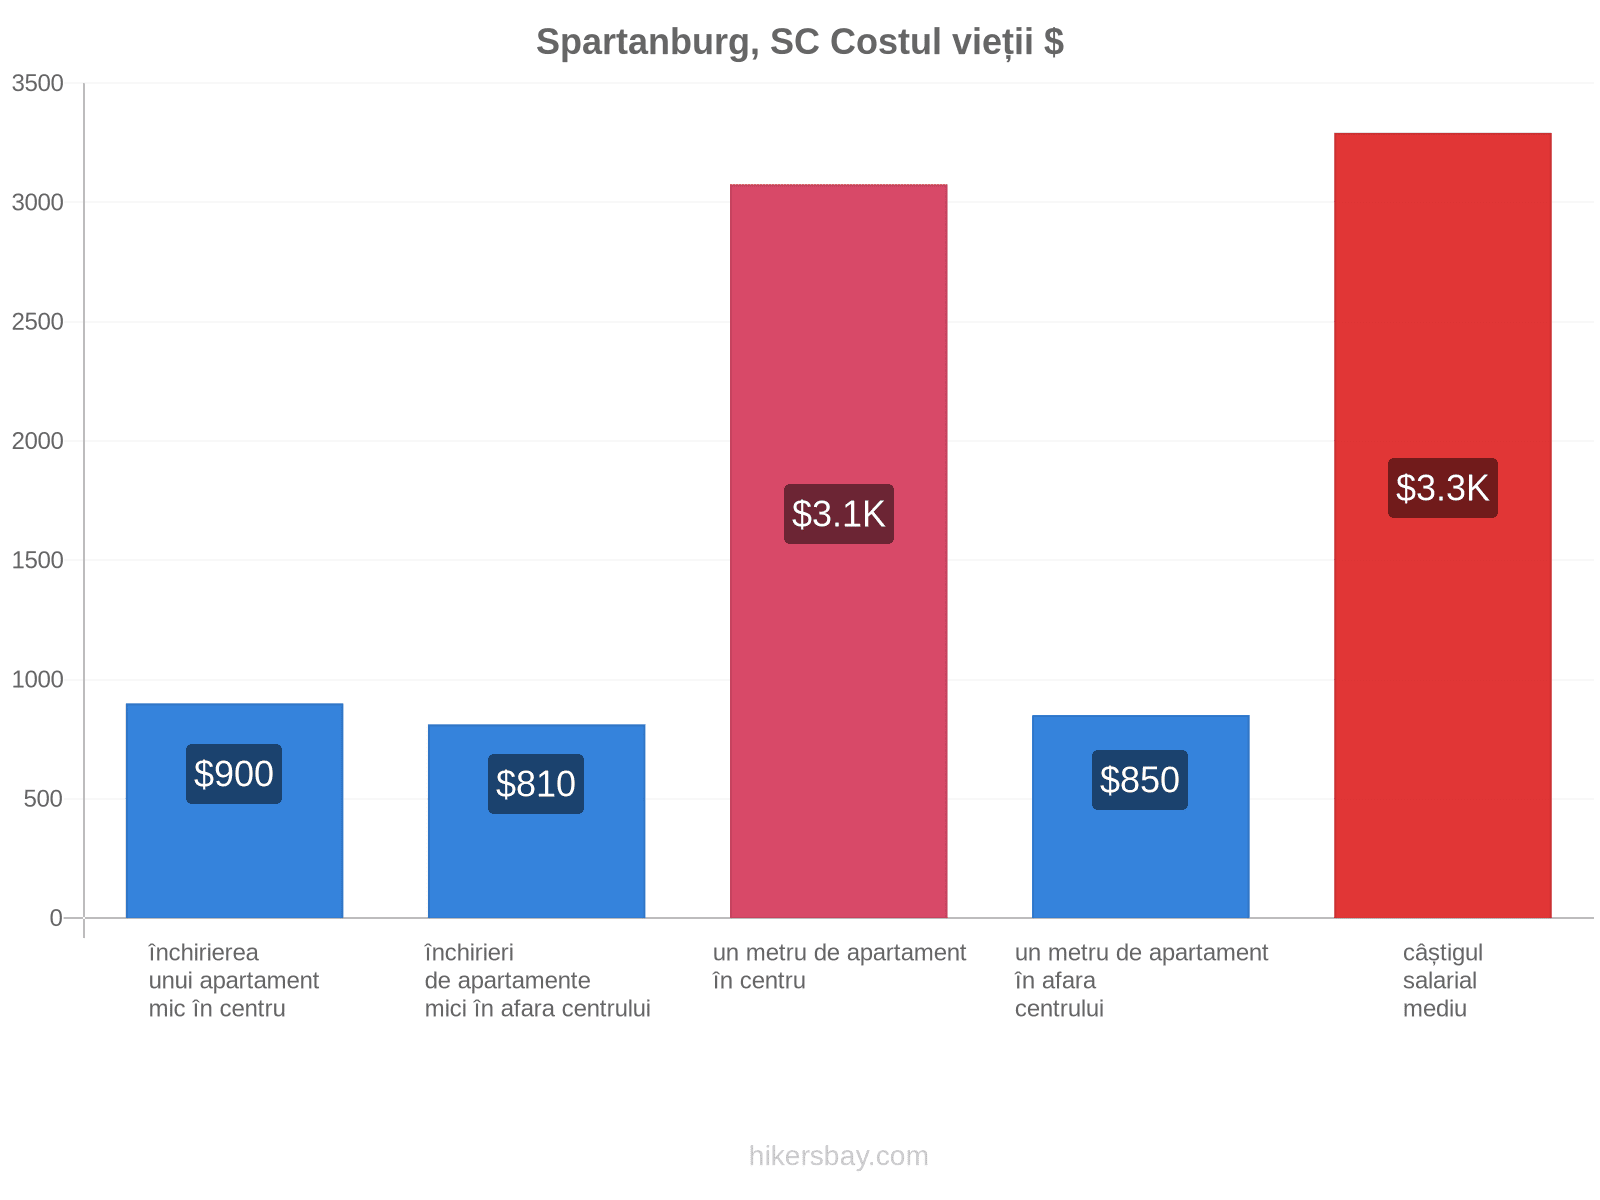 Spartanburg, SC costul vieții hikersbay.com